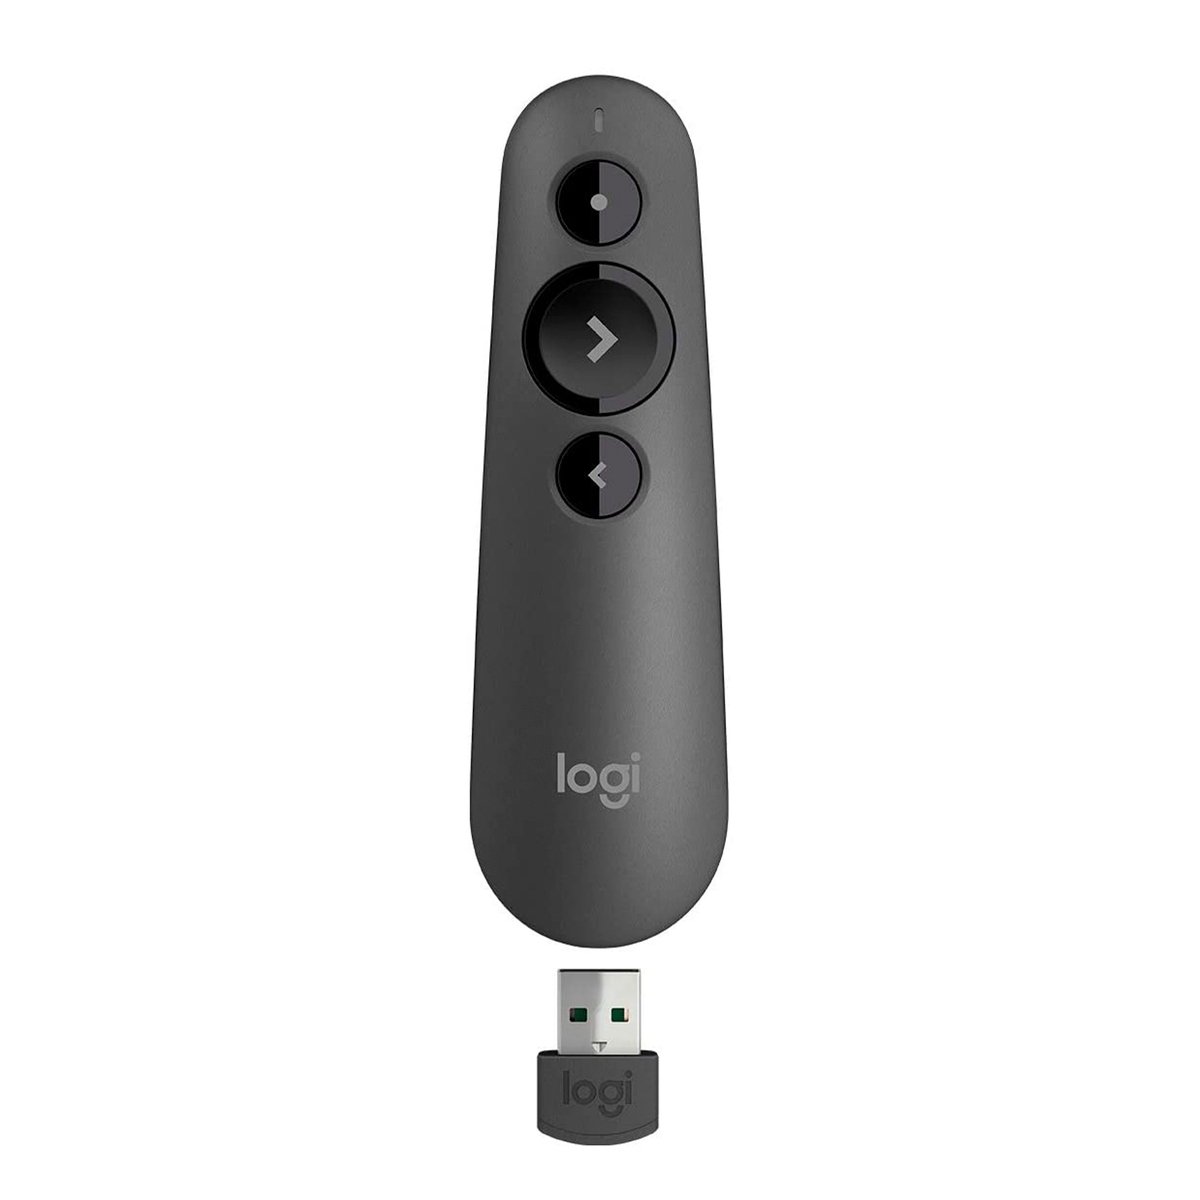 Logitech R500 Wireless Presentation Remote & Laser Pointer